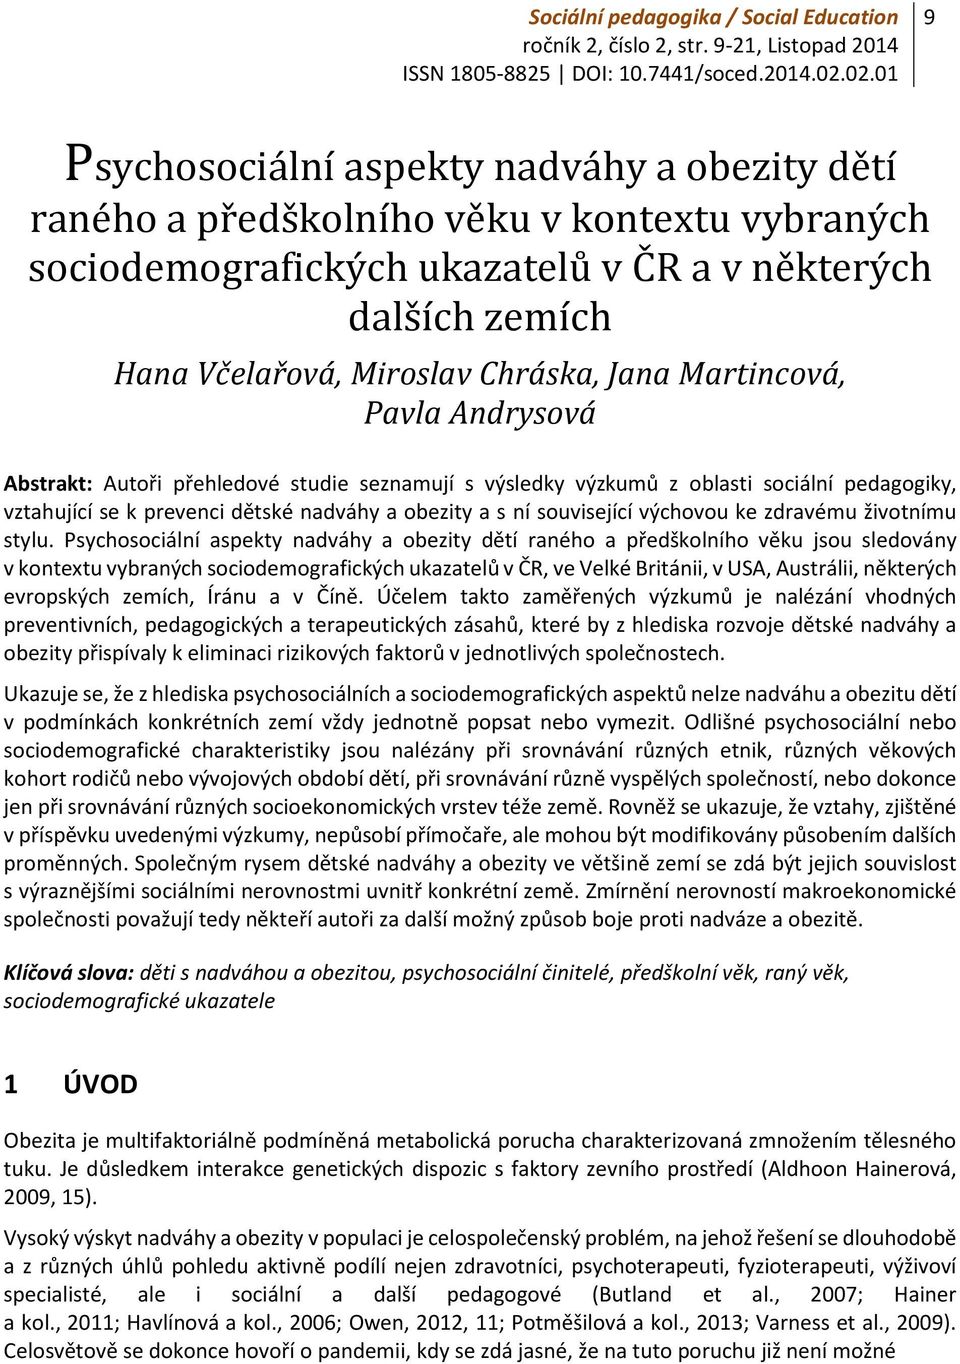 Jana Martincová, Pavla Andrysová Abstrakt: Autoři přehledové studie seznamují s výsledky výzkumů z oblasti sociální pedagogiky, vztahující se k prevenci dětské nadváhy a obezity a s ní související